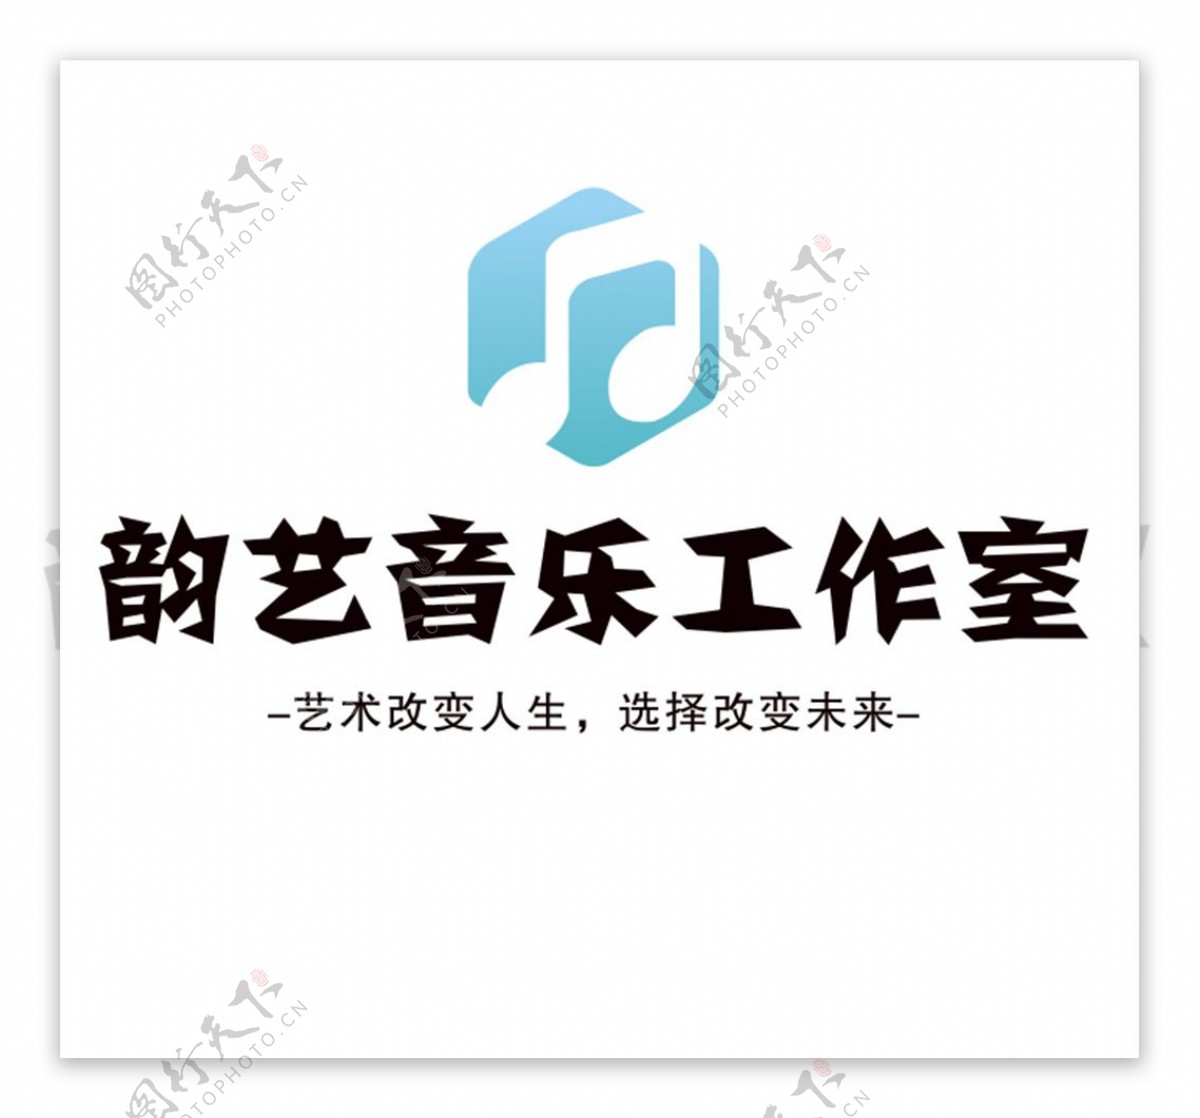 韵艺音乐工作室logo